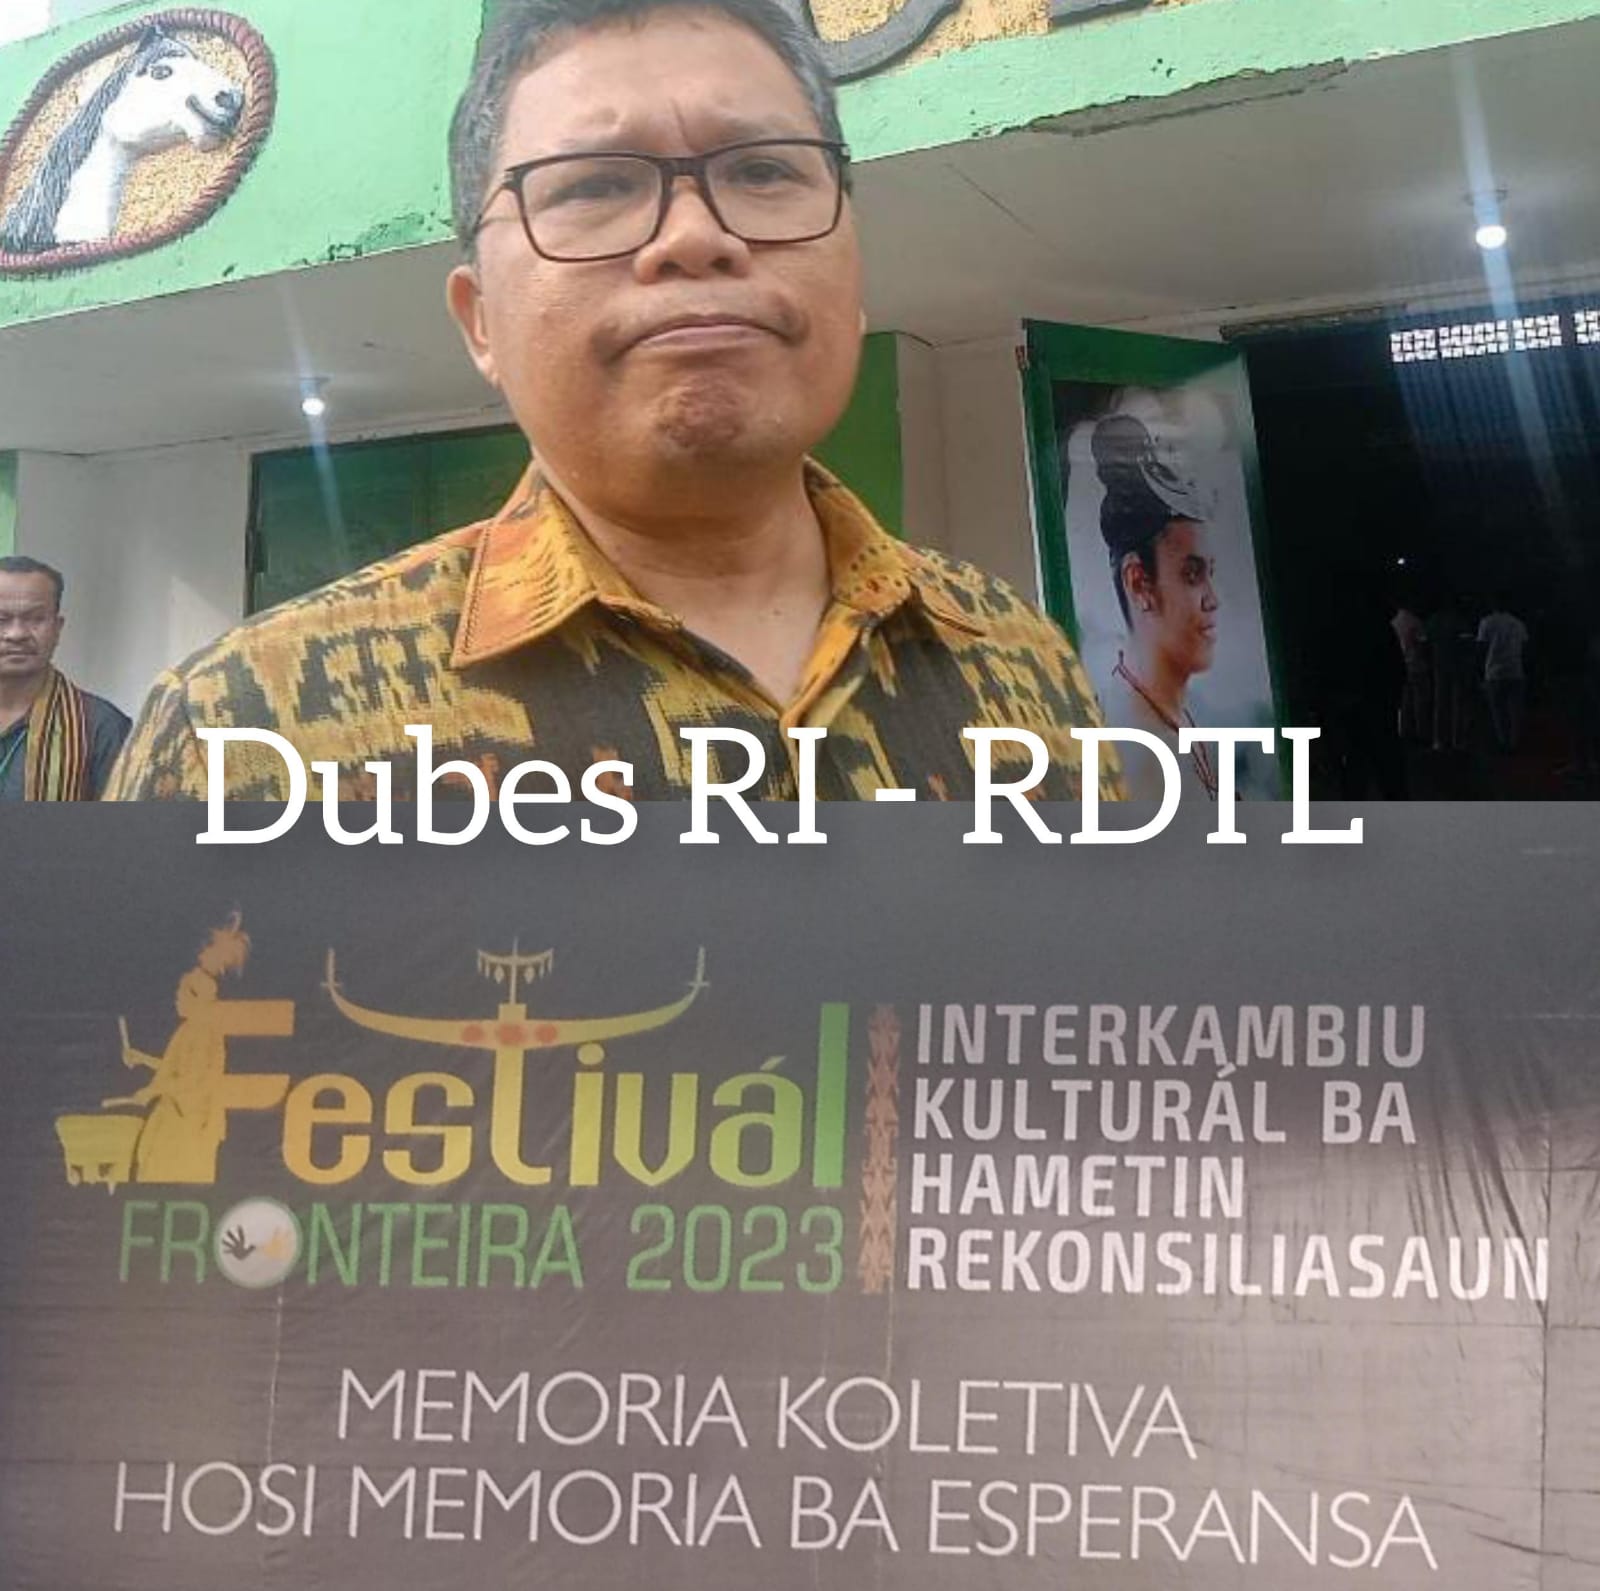 Hadiri Festival Budaya Dan Rekonsiliasi Di Timor Leste, Dubes Indonesia Sampaikan Hal Ini